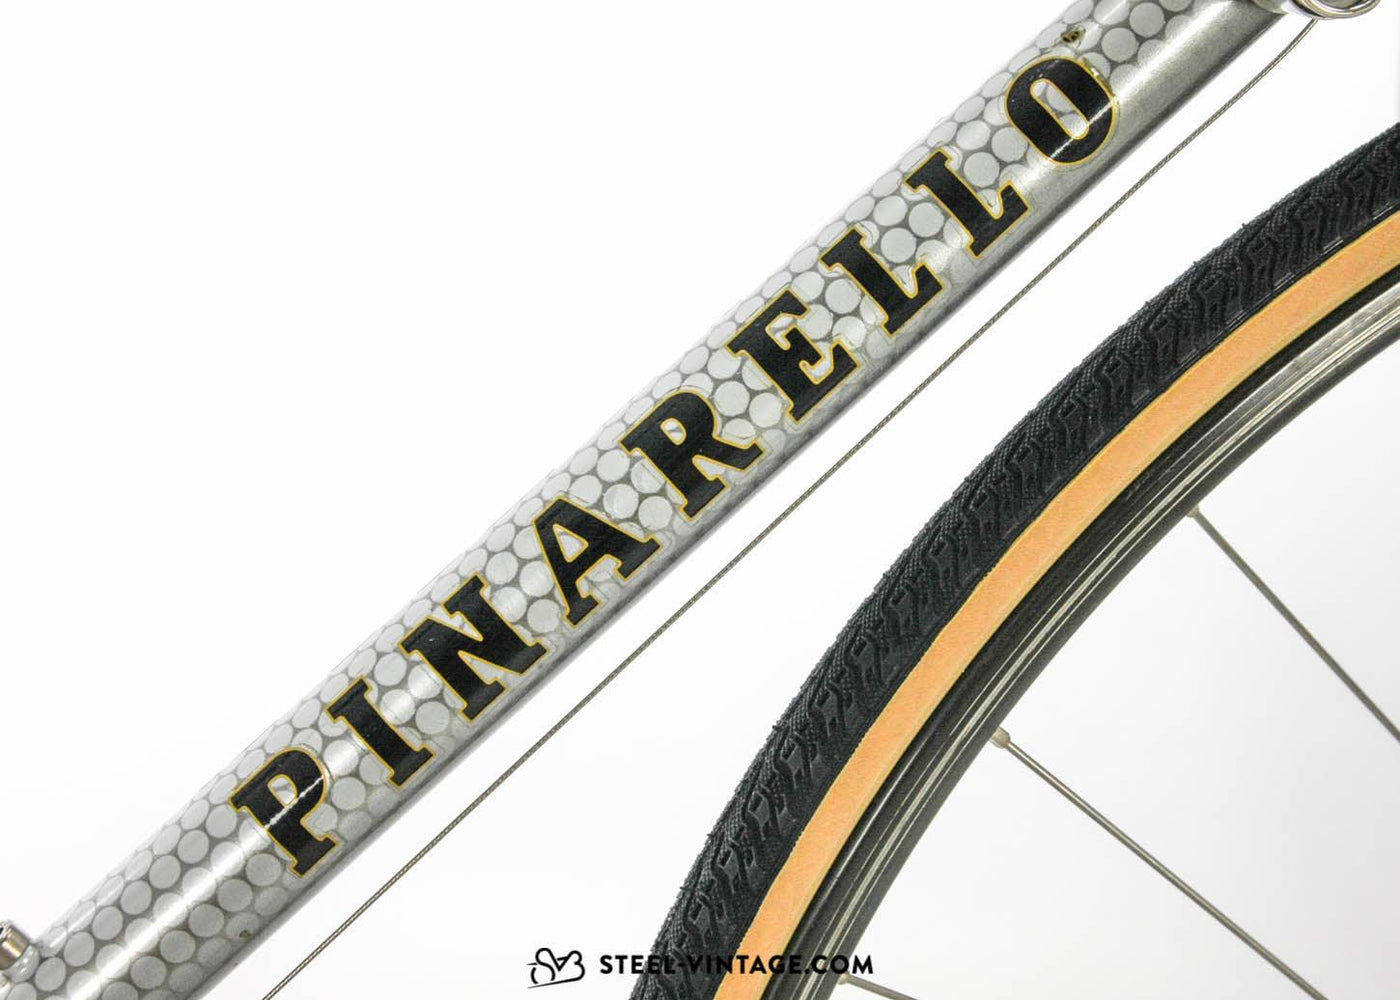 Pinarello Treviso Classic Road Bike 1980s - Steel Vintage Bikes